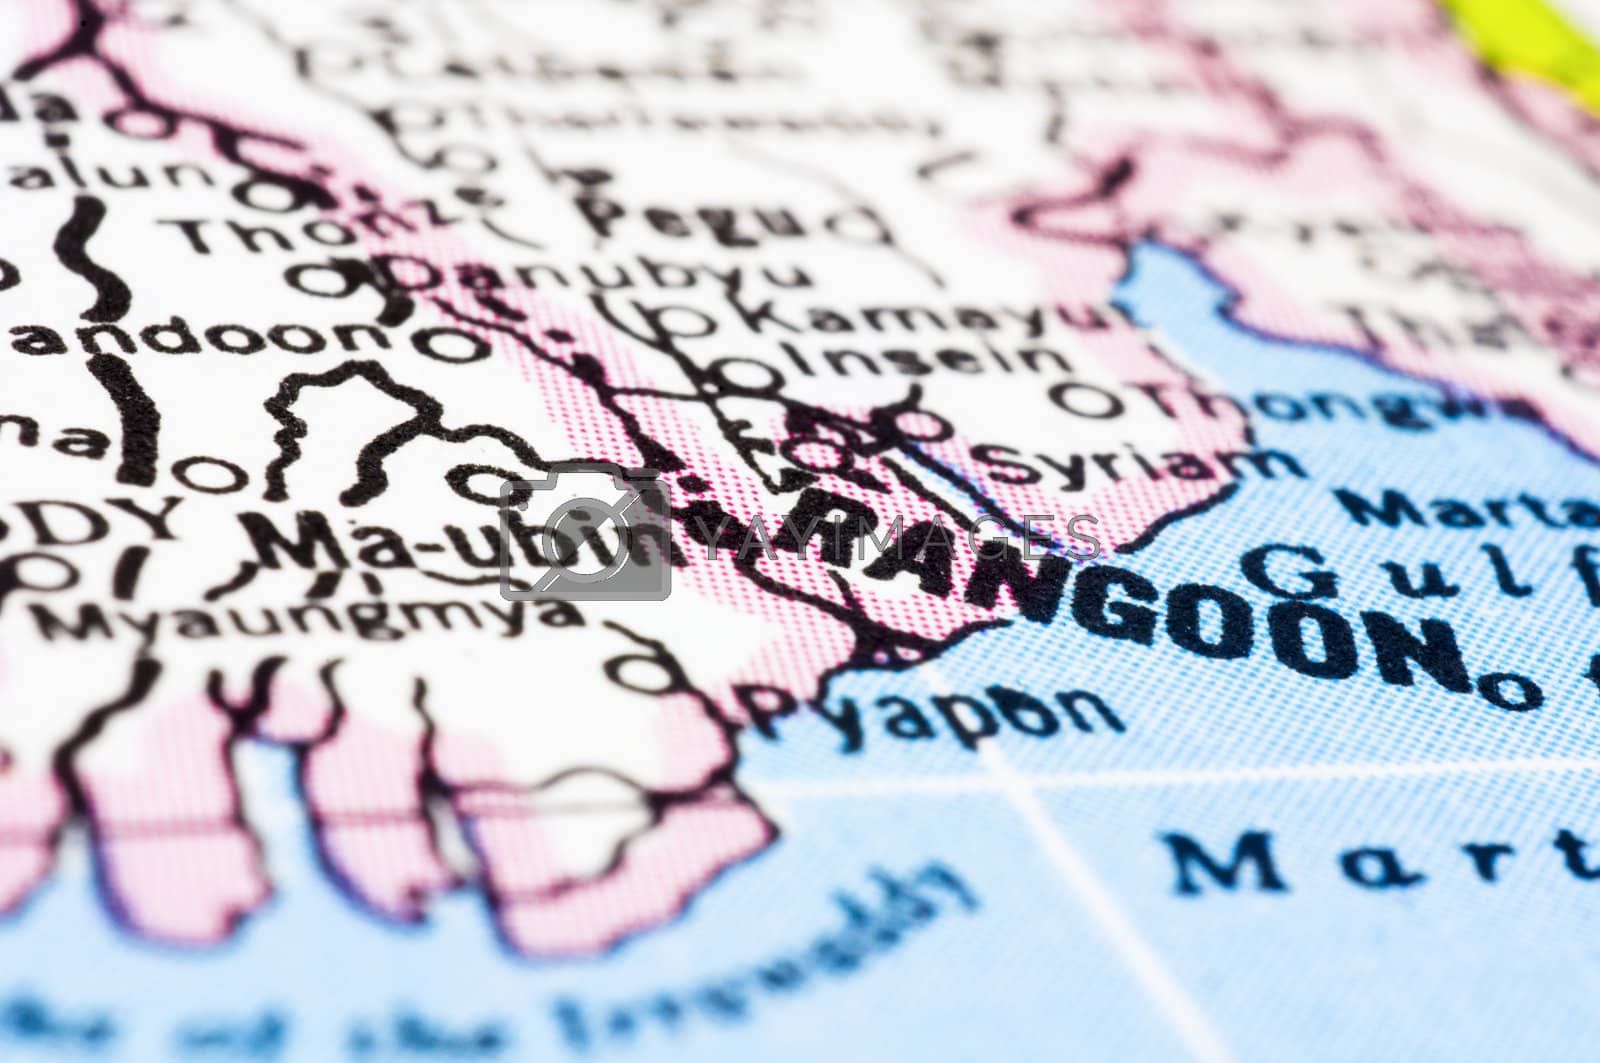 Royalty free image of close up of Rangoon or Yangon on map, Myanmar by mtkang